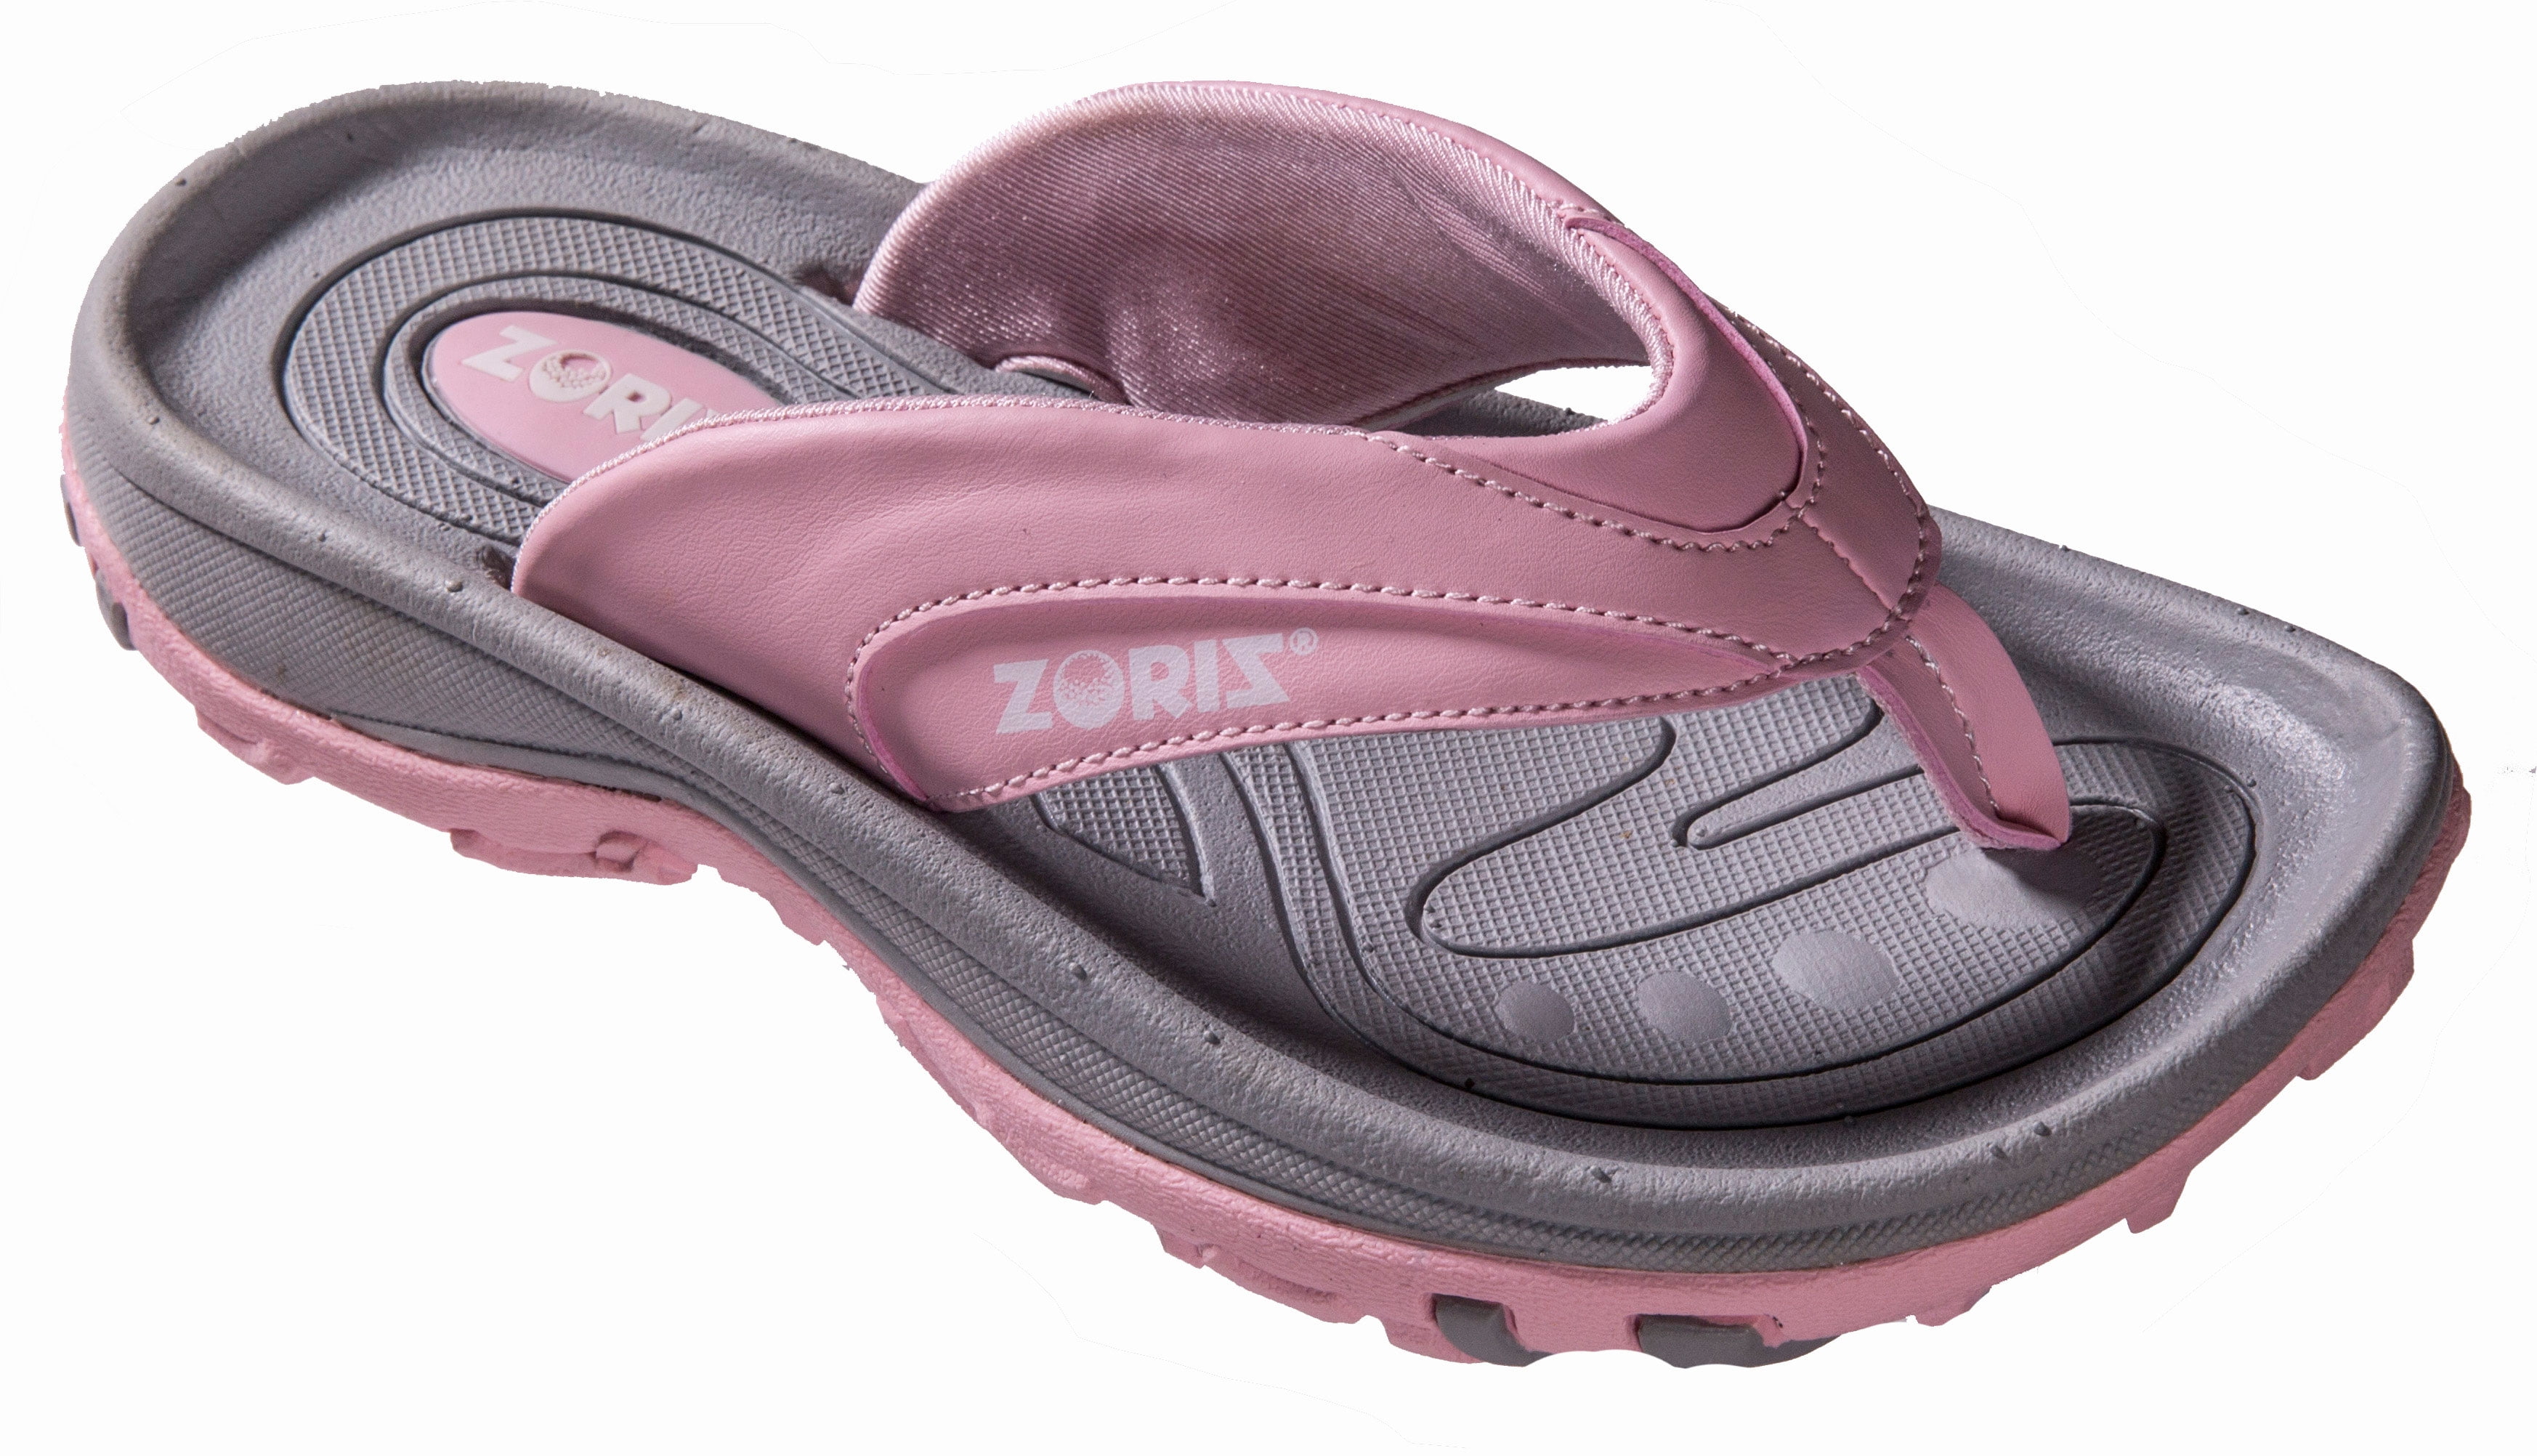 golf slide sandals